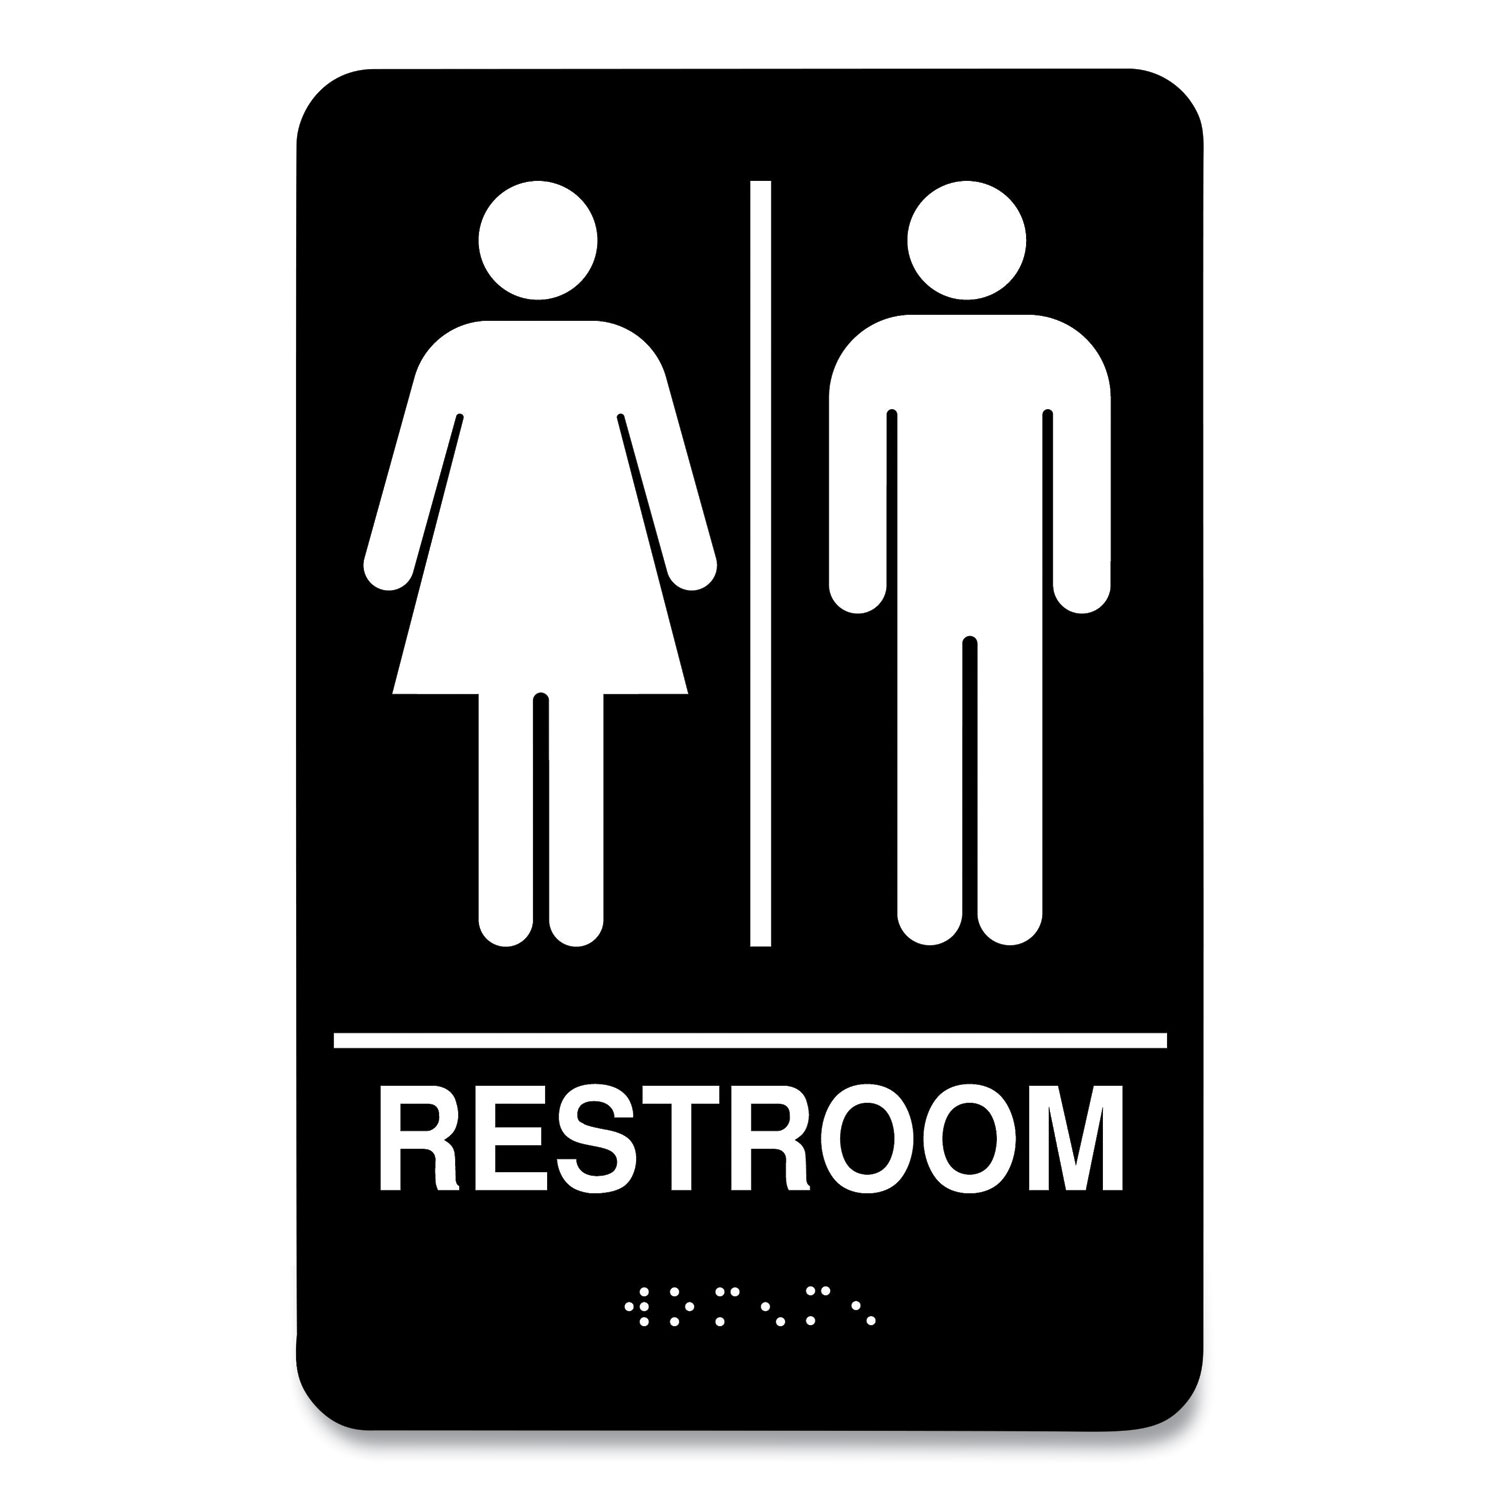 COSCO Indoor Restroom Door Sign, Unixex 5.5 x 8.5, Black/White